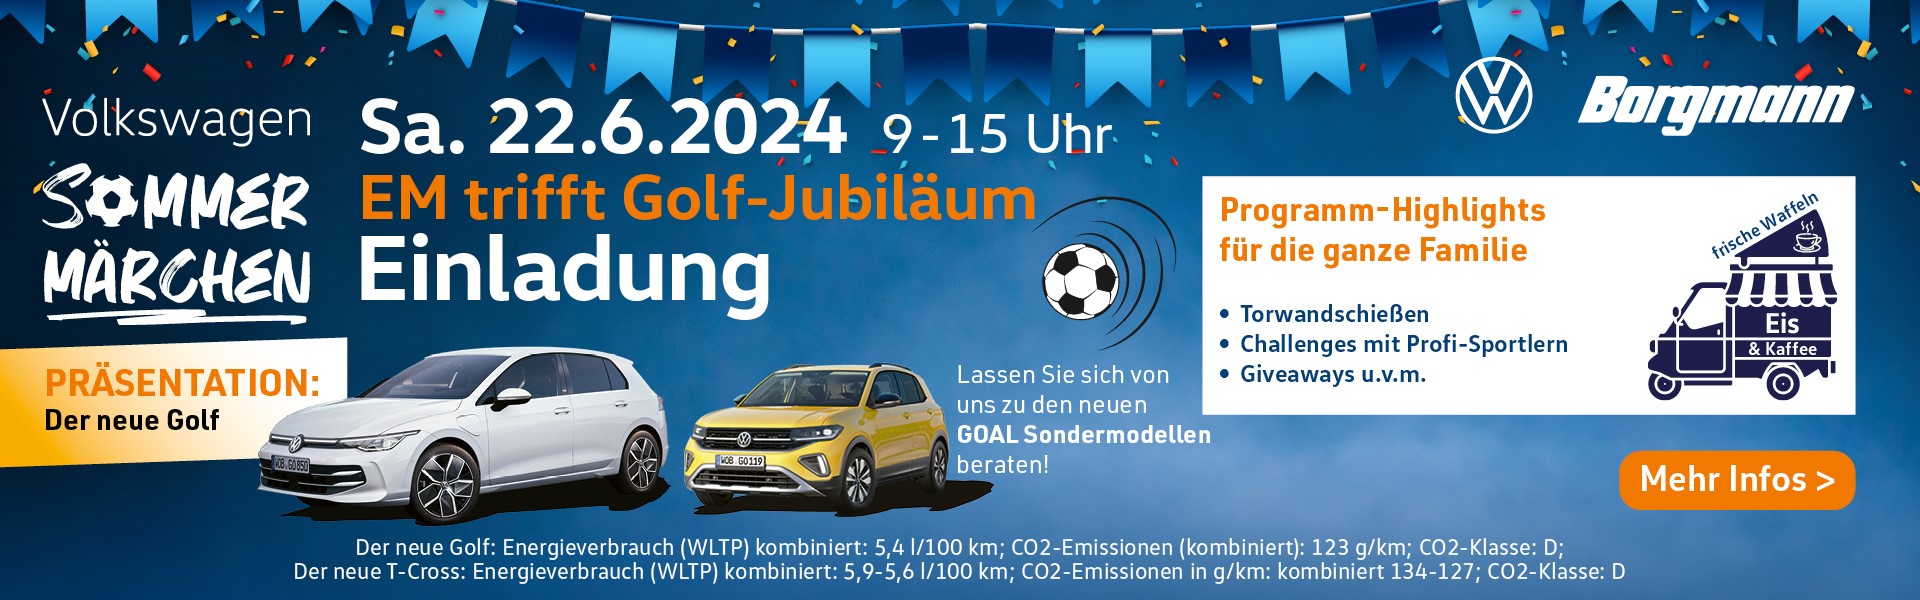 VW Sommermärchen am 22.06.24